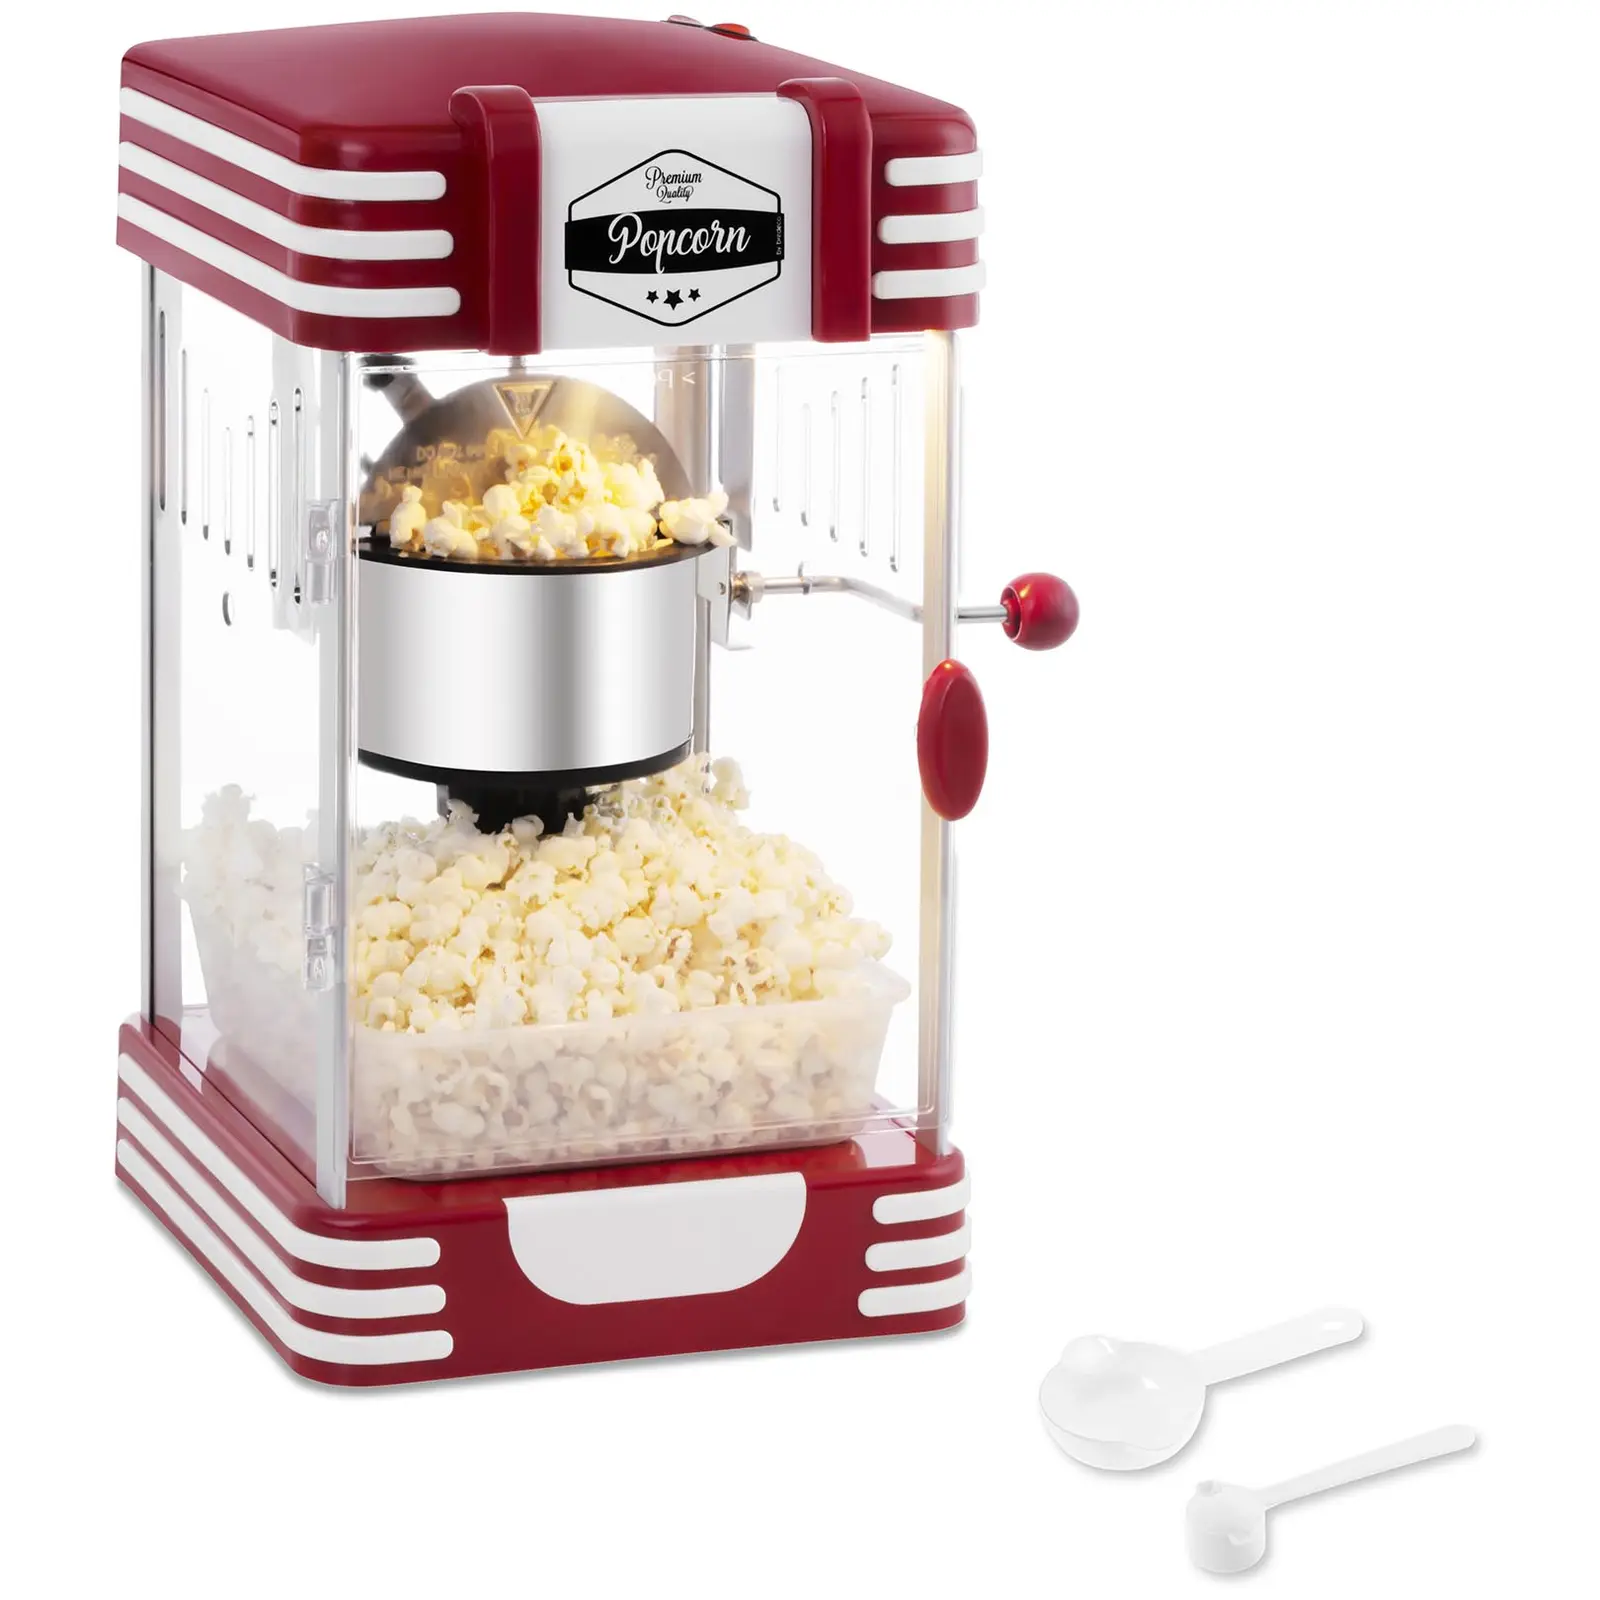 Popcorn készítő gép - 50-es évekbeli retro design - piros